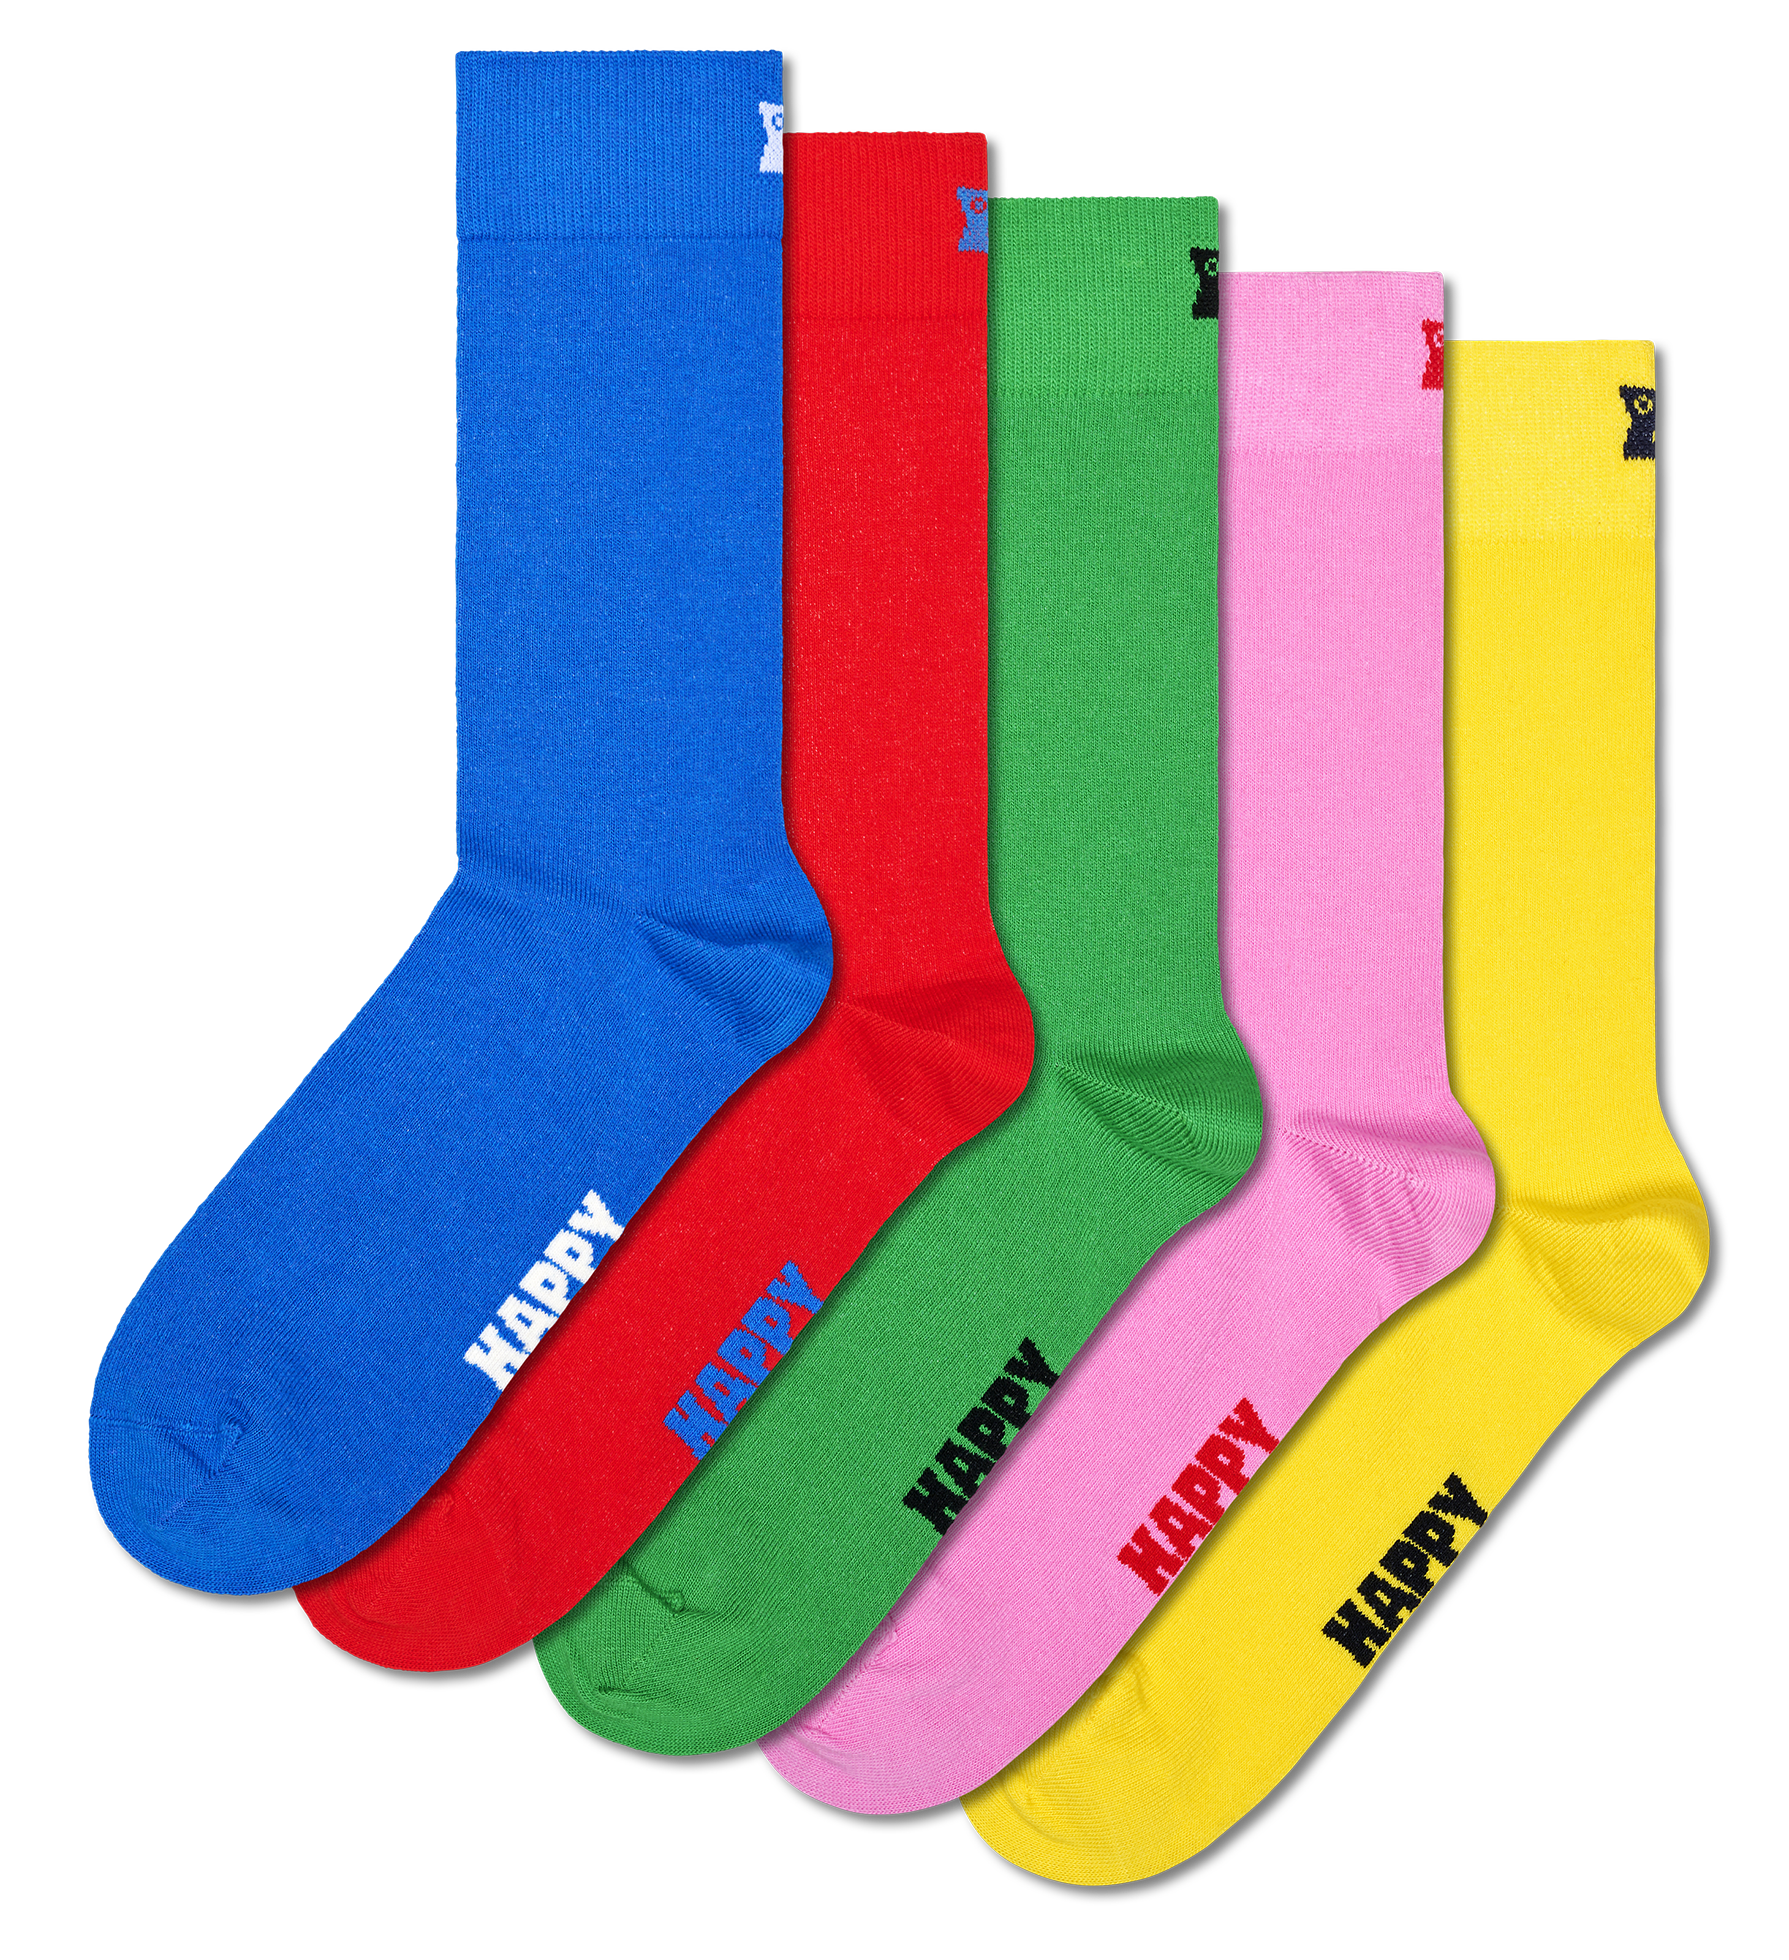 Happy Socks Midsummer Food Sock - Regular socks 